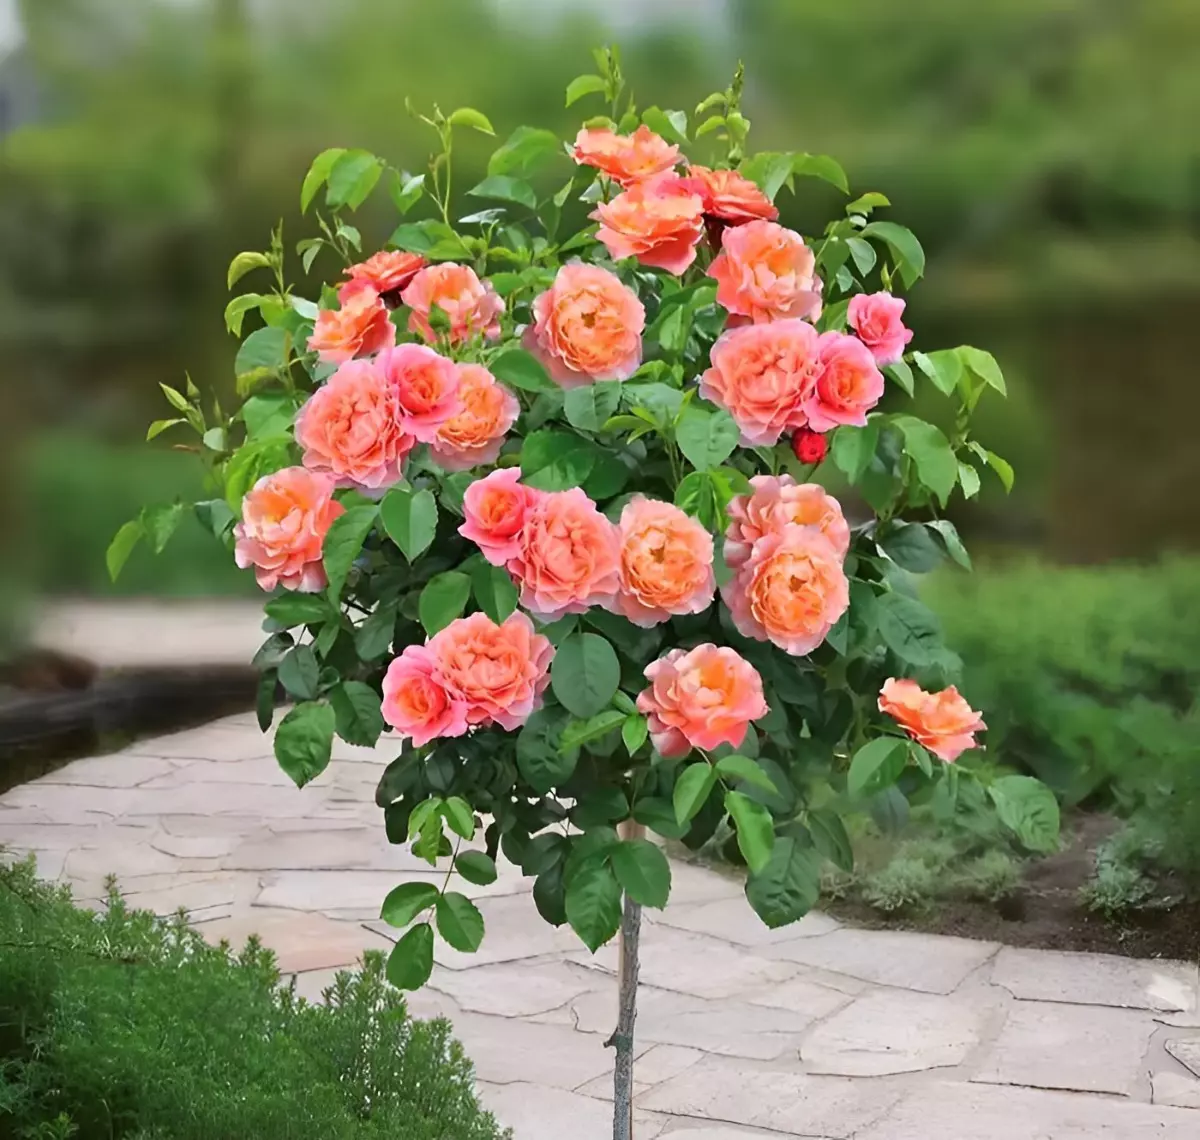 comment tailler des rosiers tiges au printemps pour obtenir ce jolie resultat avec beaucoup de fleurs